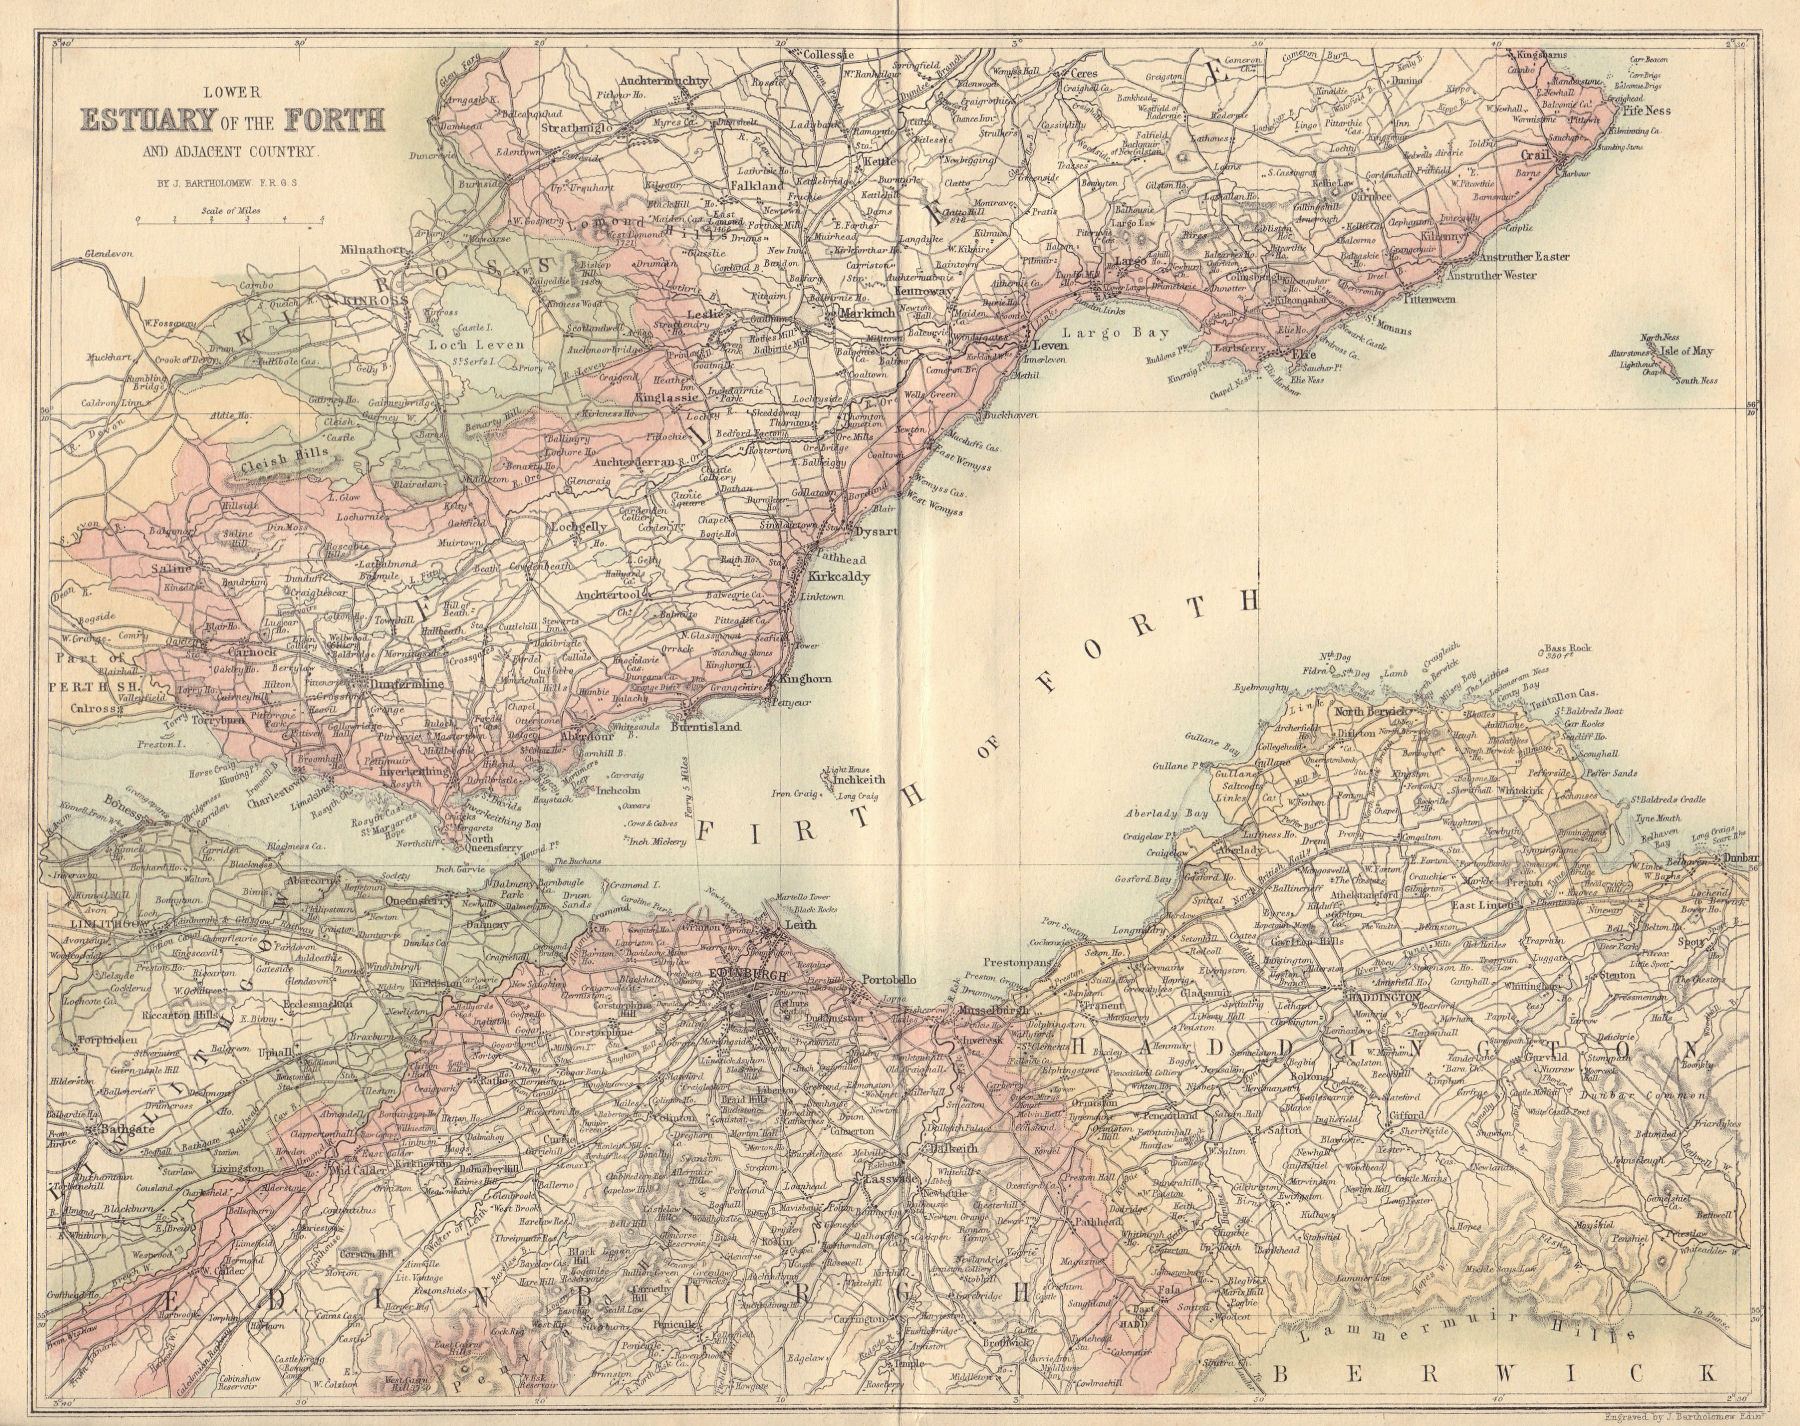 Lower Estuary of the Forth. Fife Midlothian Haddington. BARTHOLOMEW 1866 map